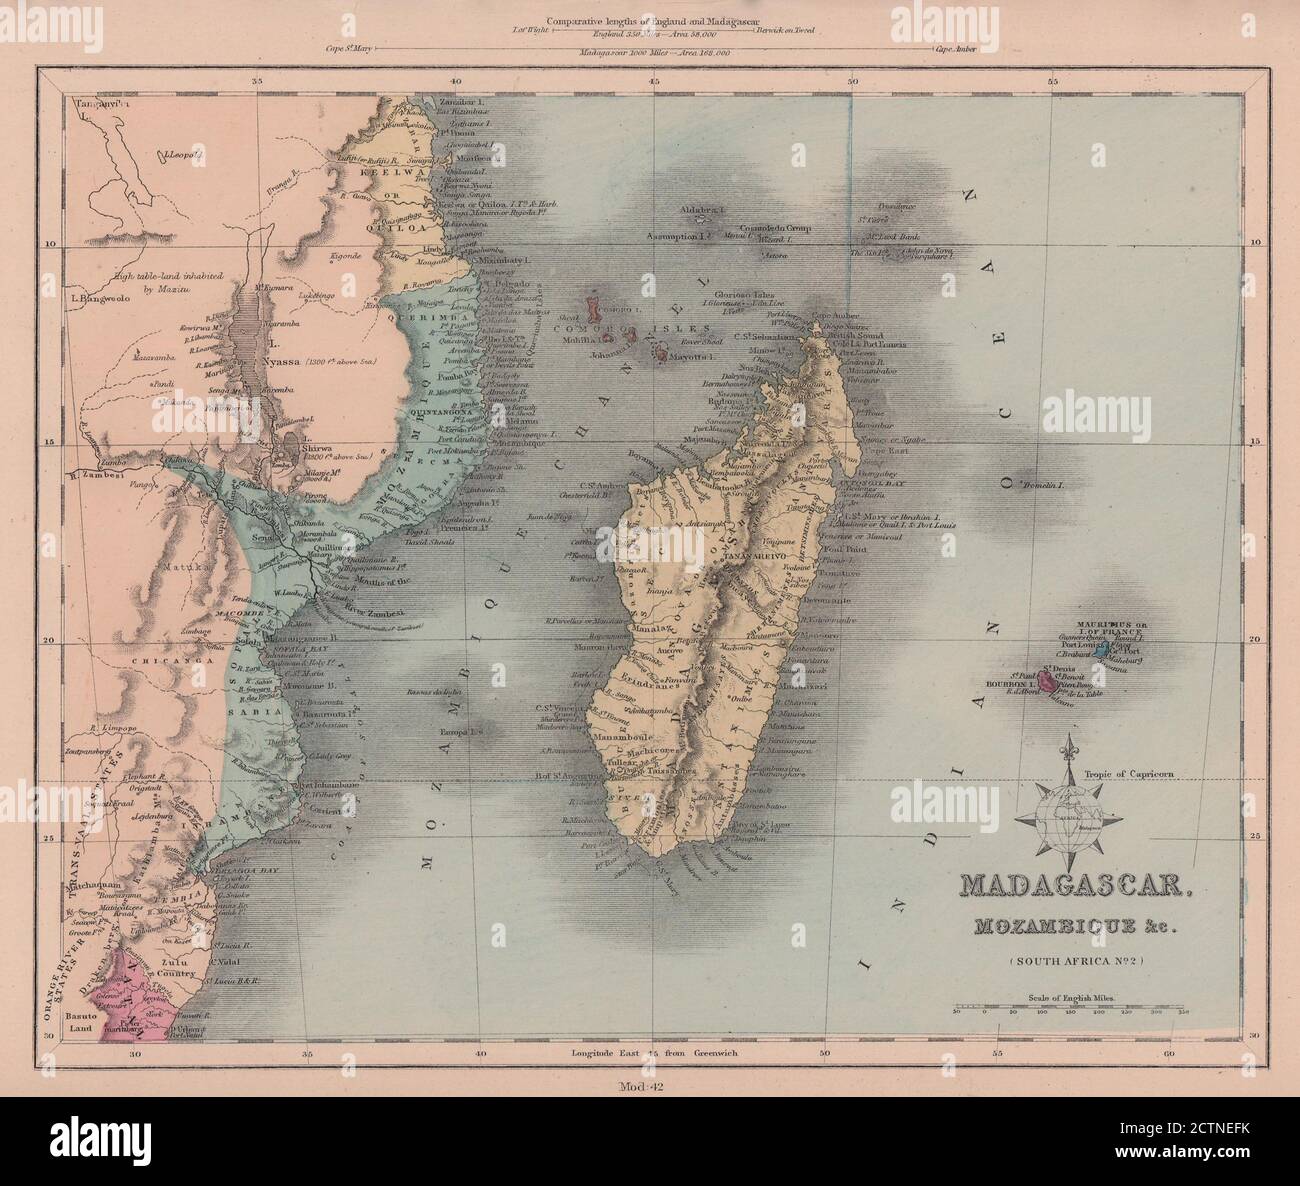 Canal Madagascar et Mozambique. La Réunion et Maurice. Zanzibar. CARTE HUGHES 1876 Banque D'Images